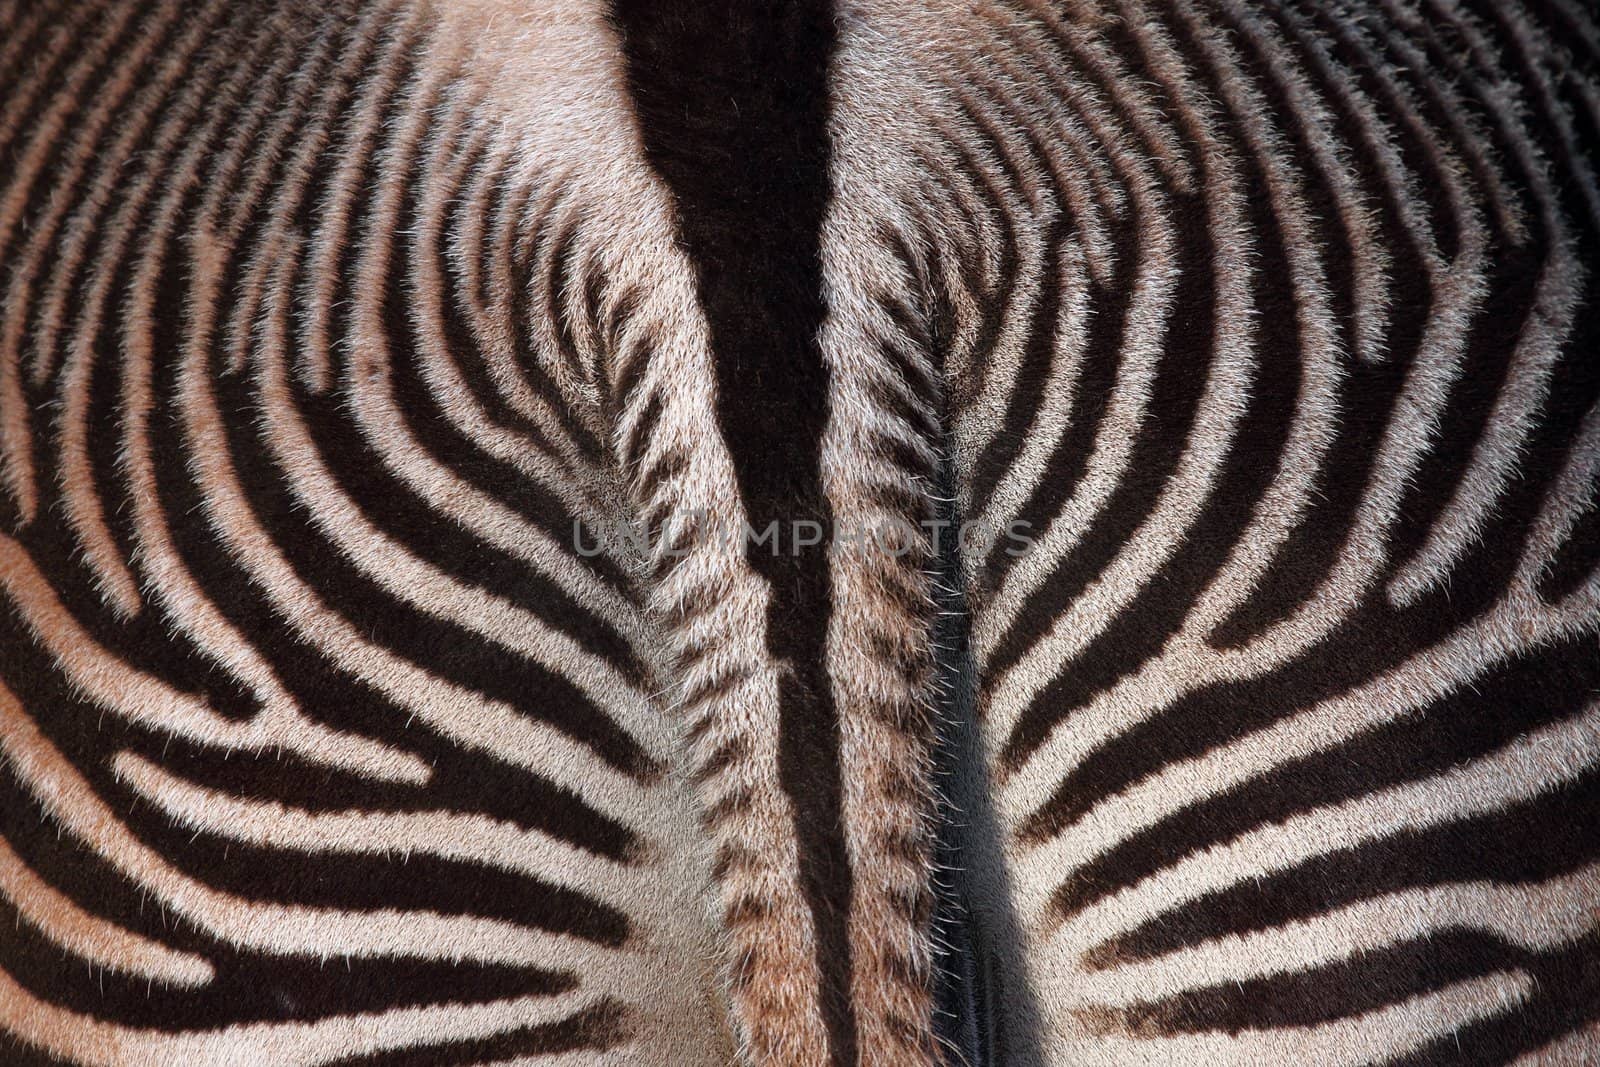 zebra by erllre